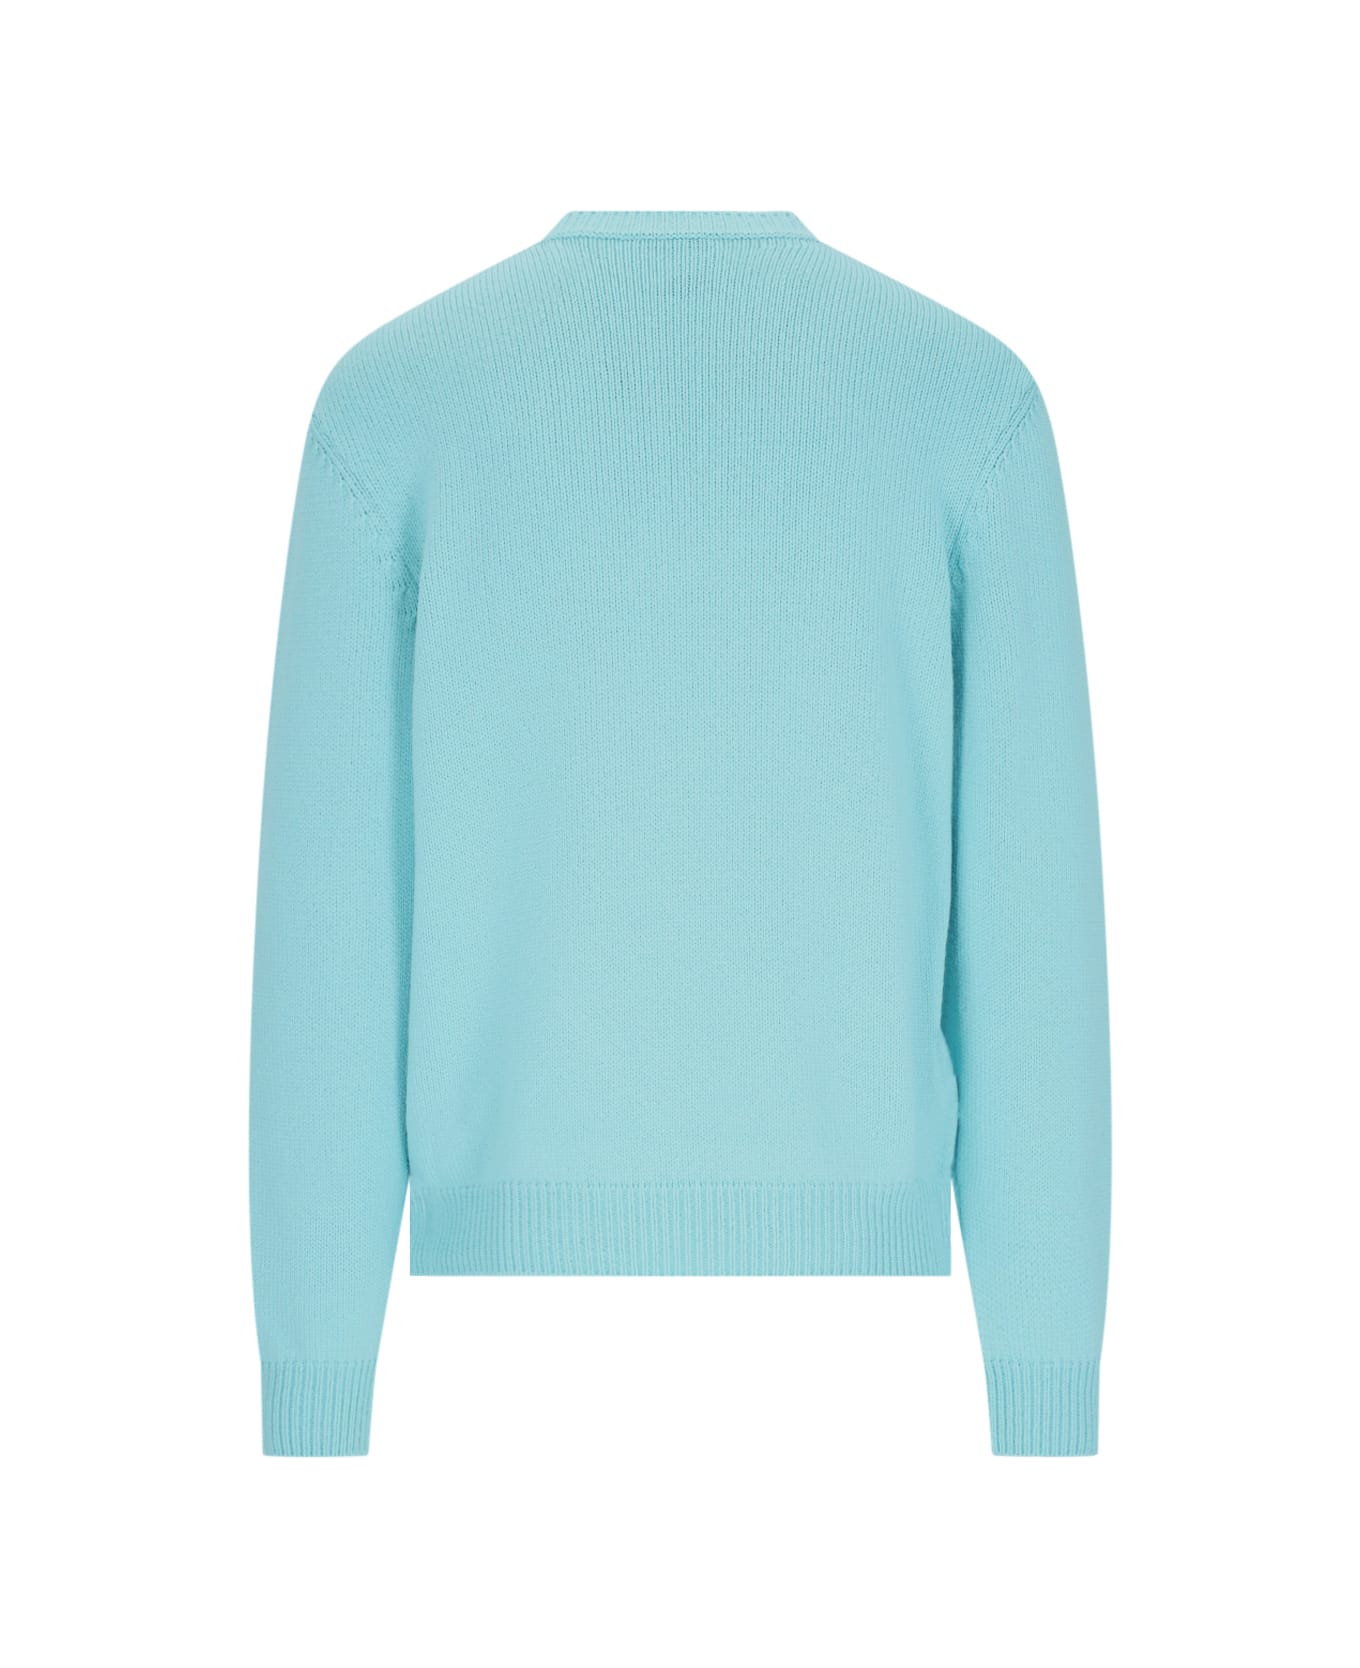 Balmain Wool Blend Sweater - Light Blue